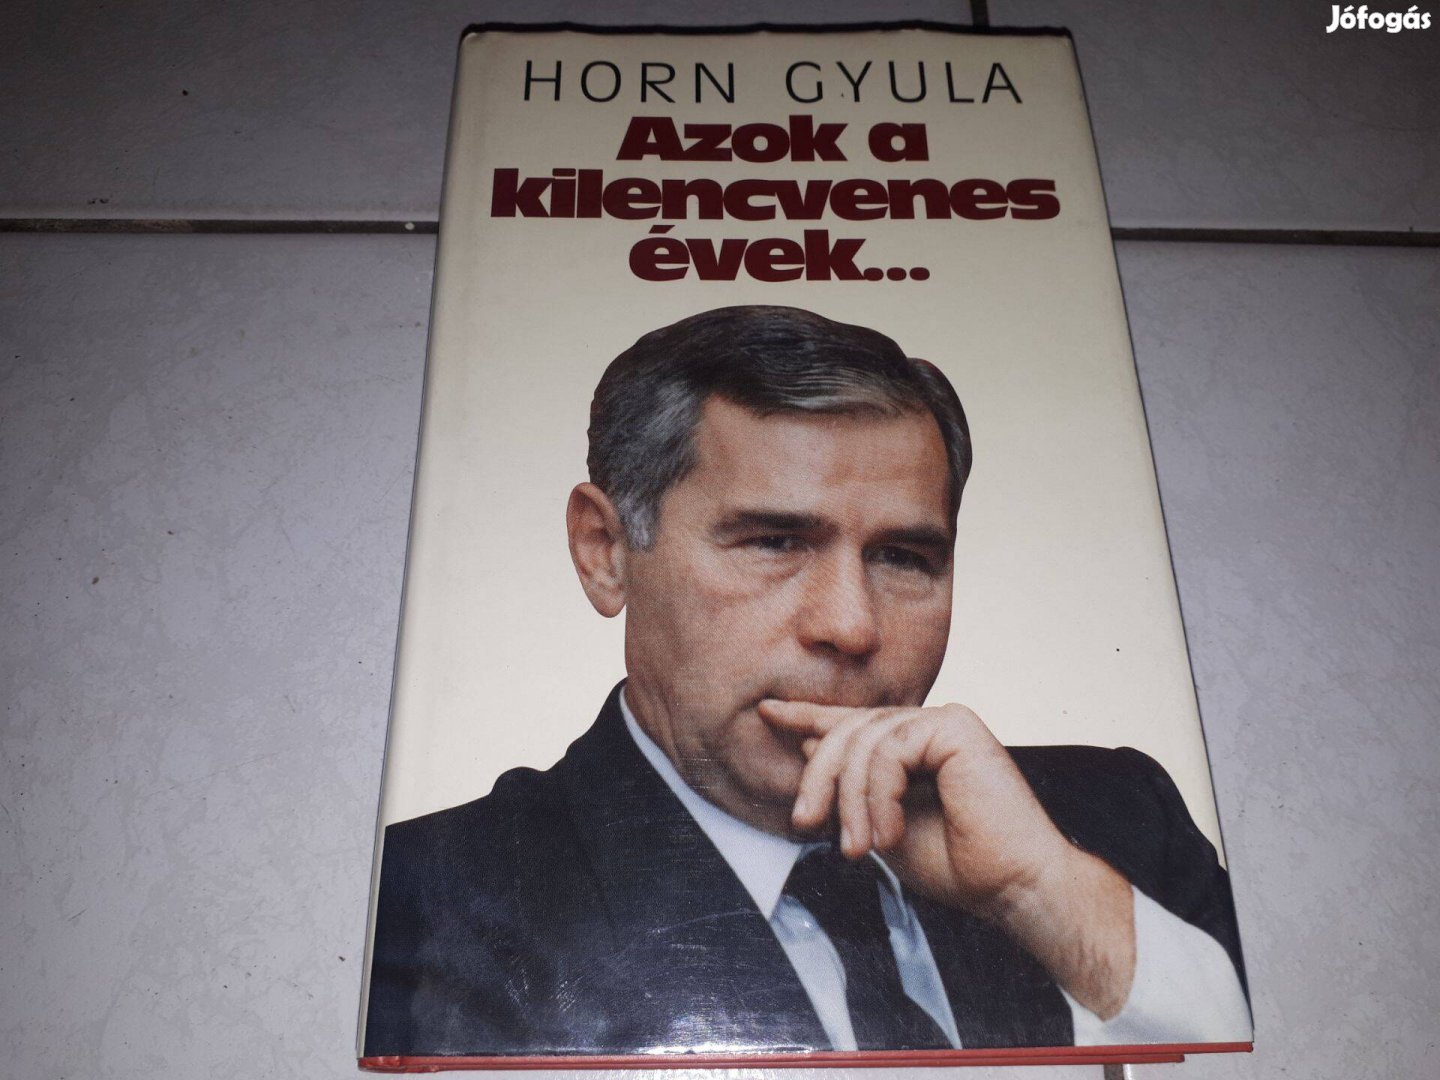 Horn Gyula - Azok a kilencvenes évek